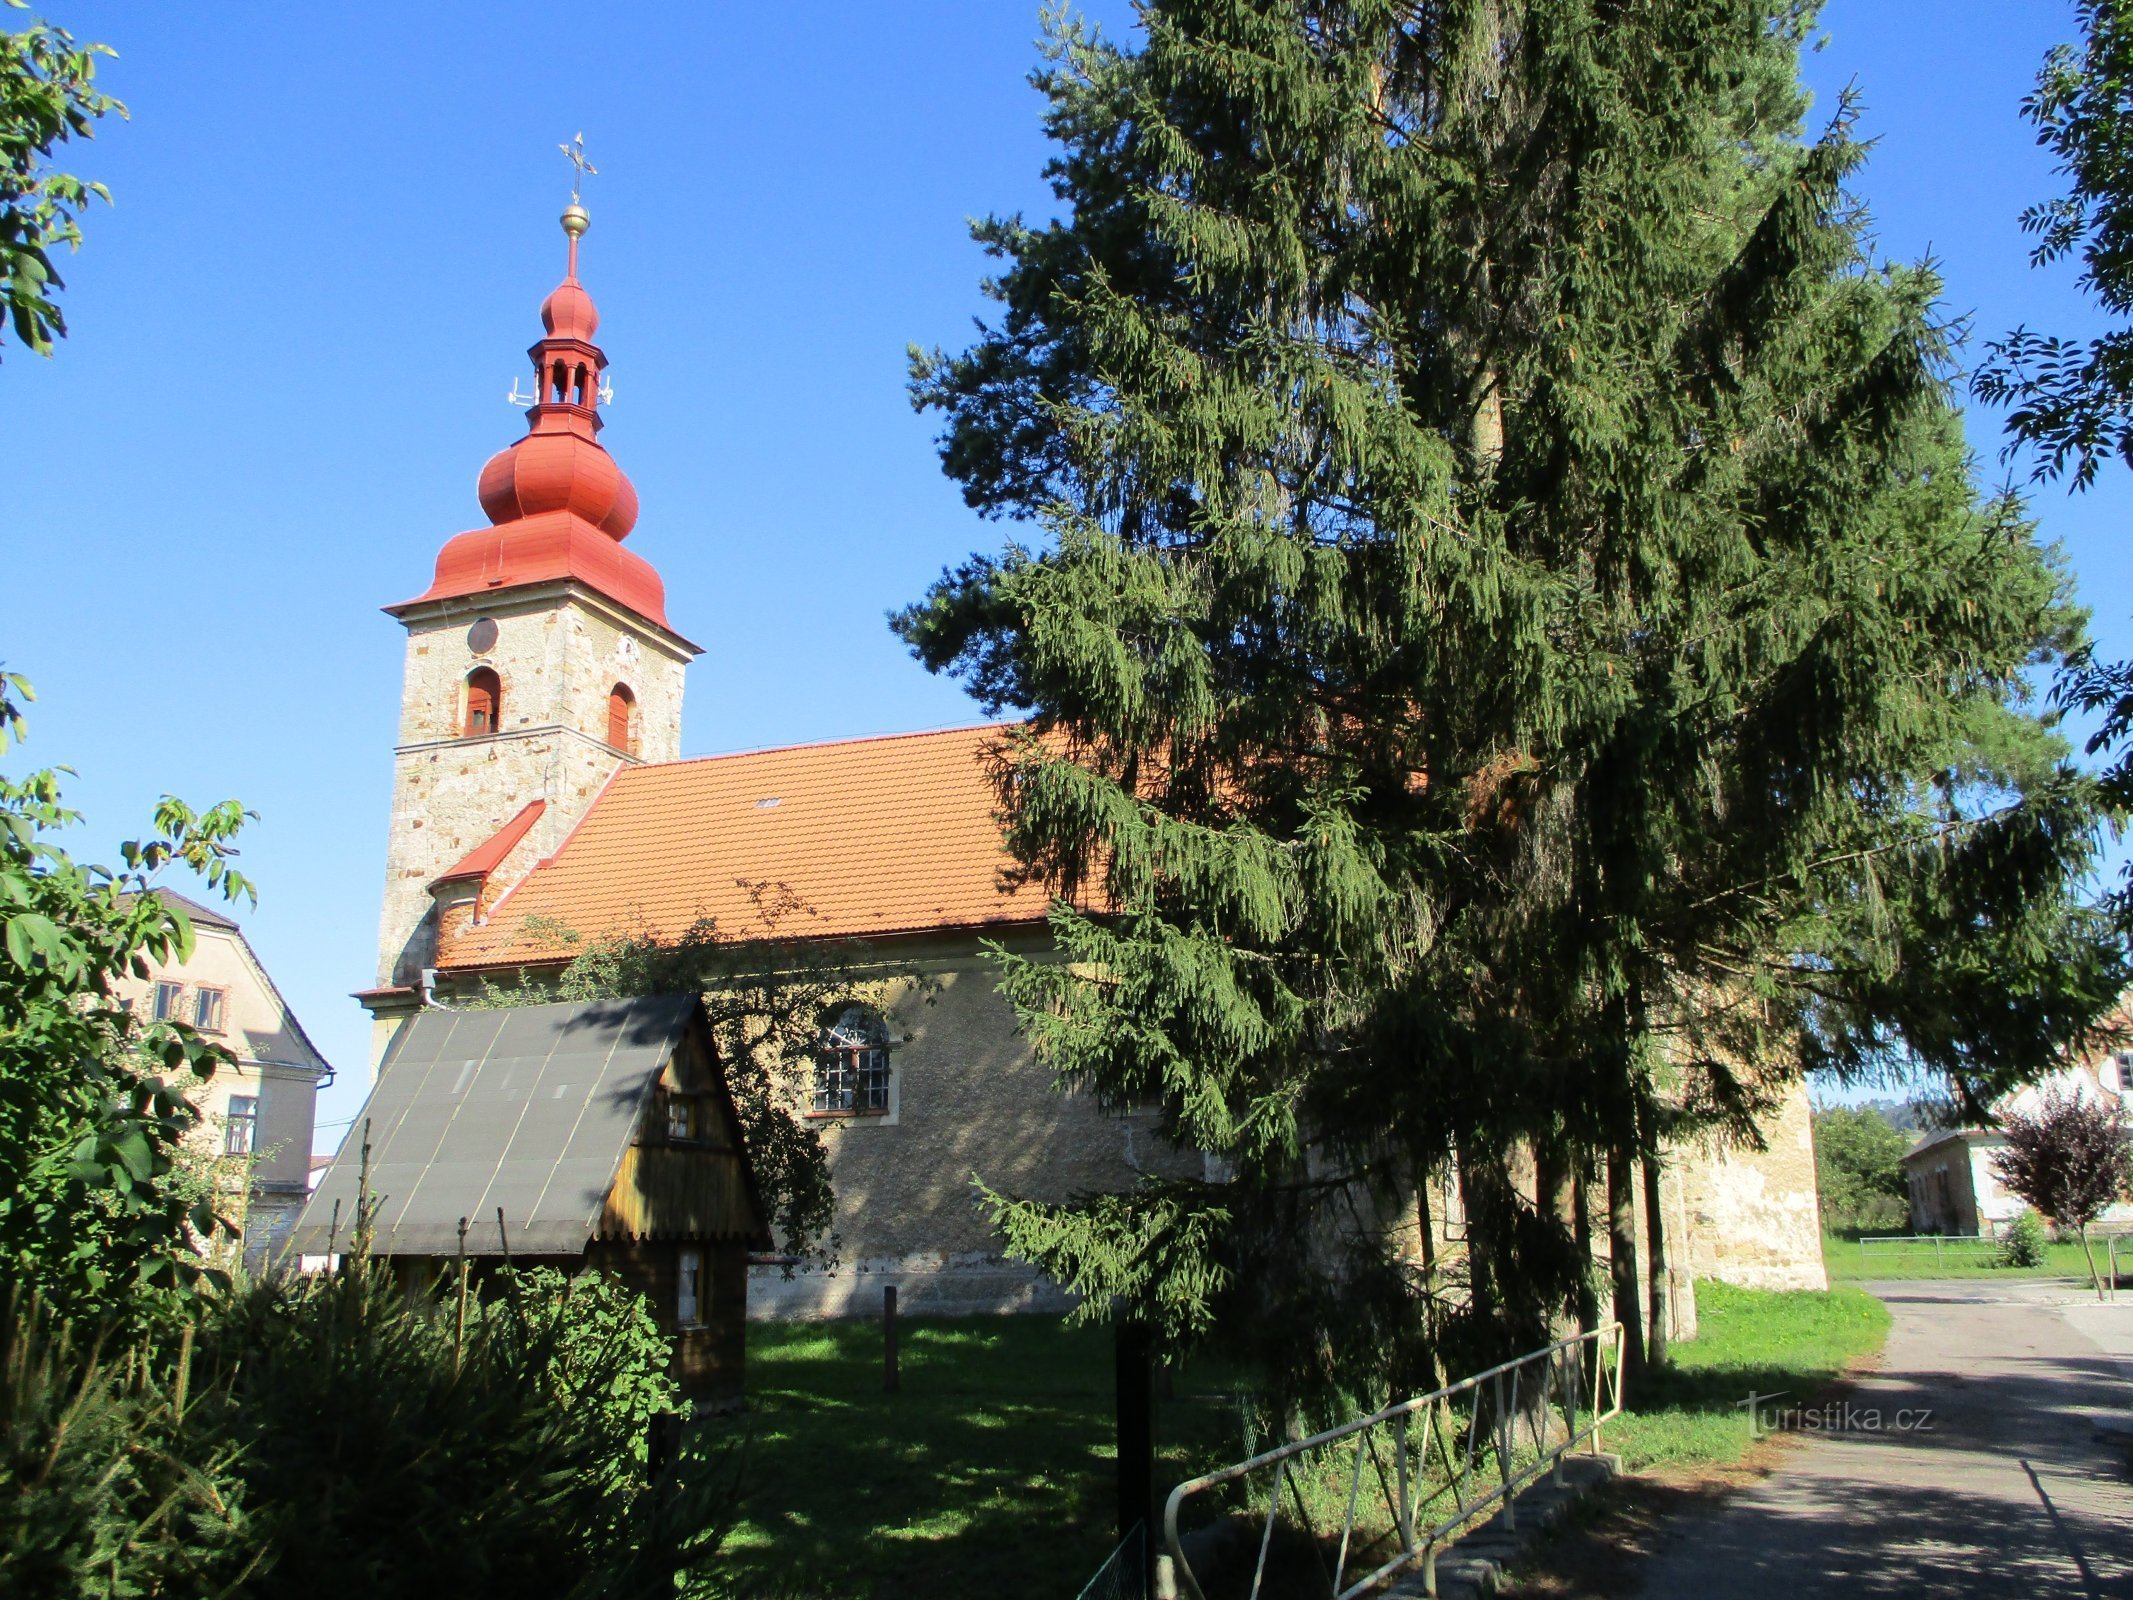 Cerkev sv. Josefa (Vlčkovice v Podkrkonoših)